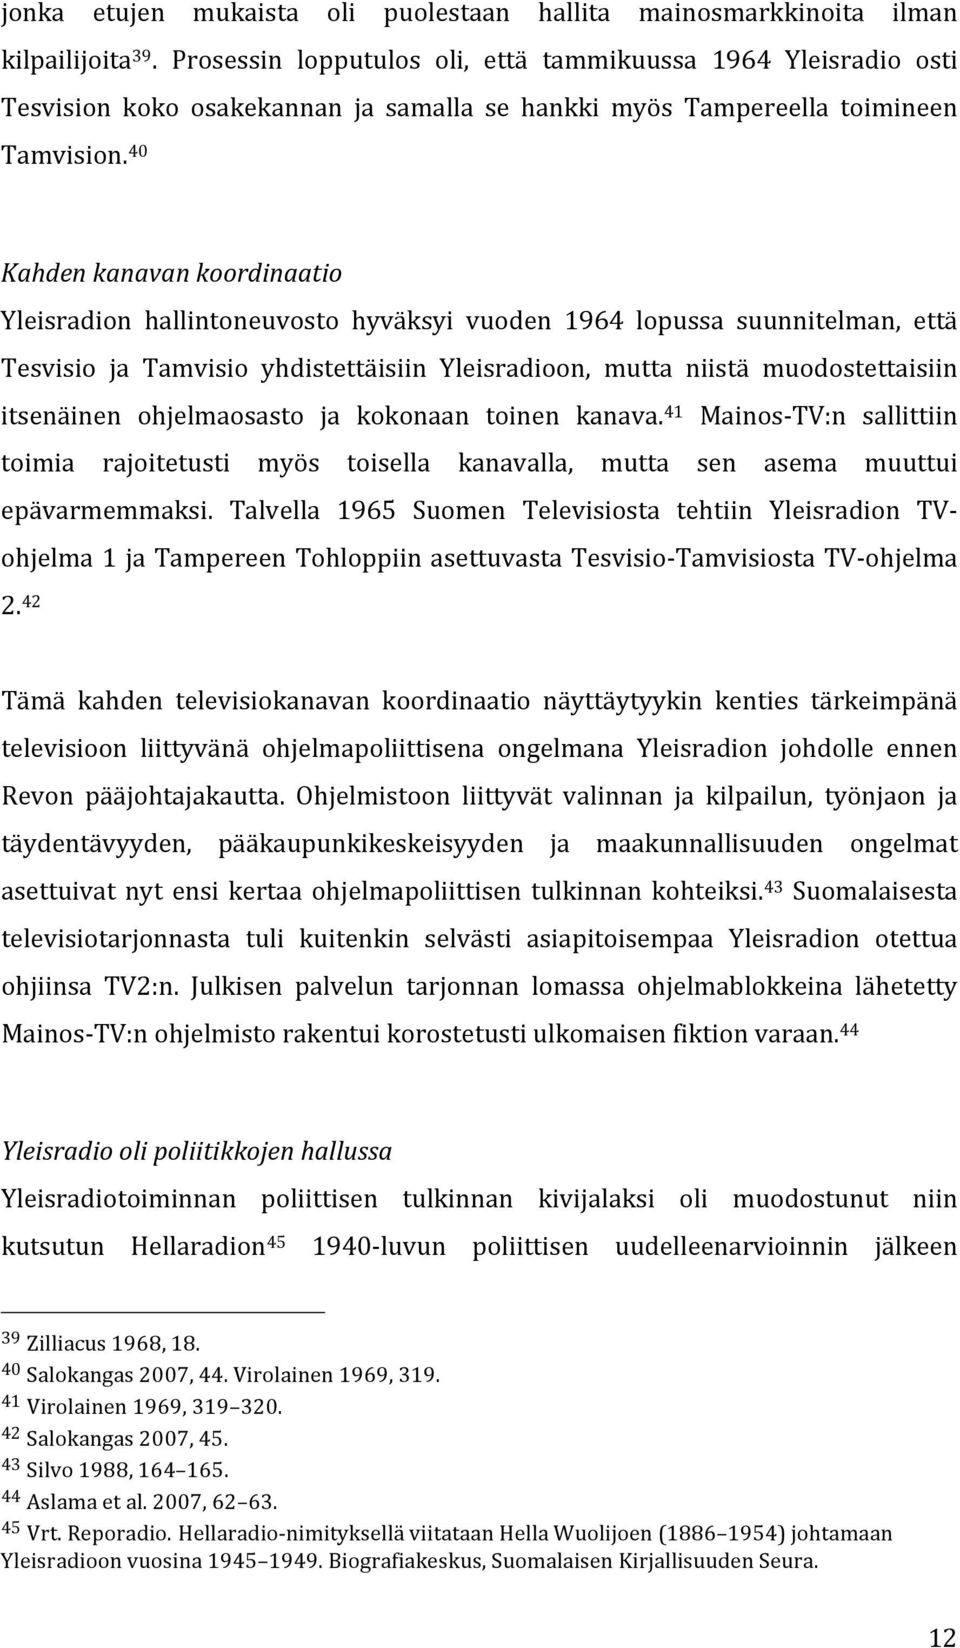 40 Kahden kanavan koordinaatio Yleisradion hallintoneuvosto hyväksyi vuoden 1964 lopussa suunnitelman, että Tesvisio ja Tamvisio yhdistettäisiin Yleisradioon, mutta niistä muodostettaisiin itsenäinen